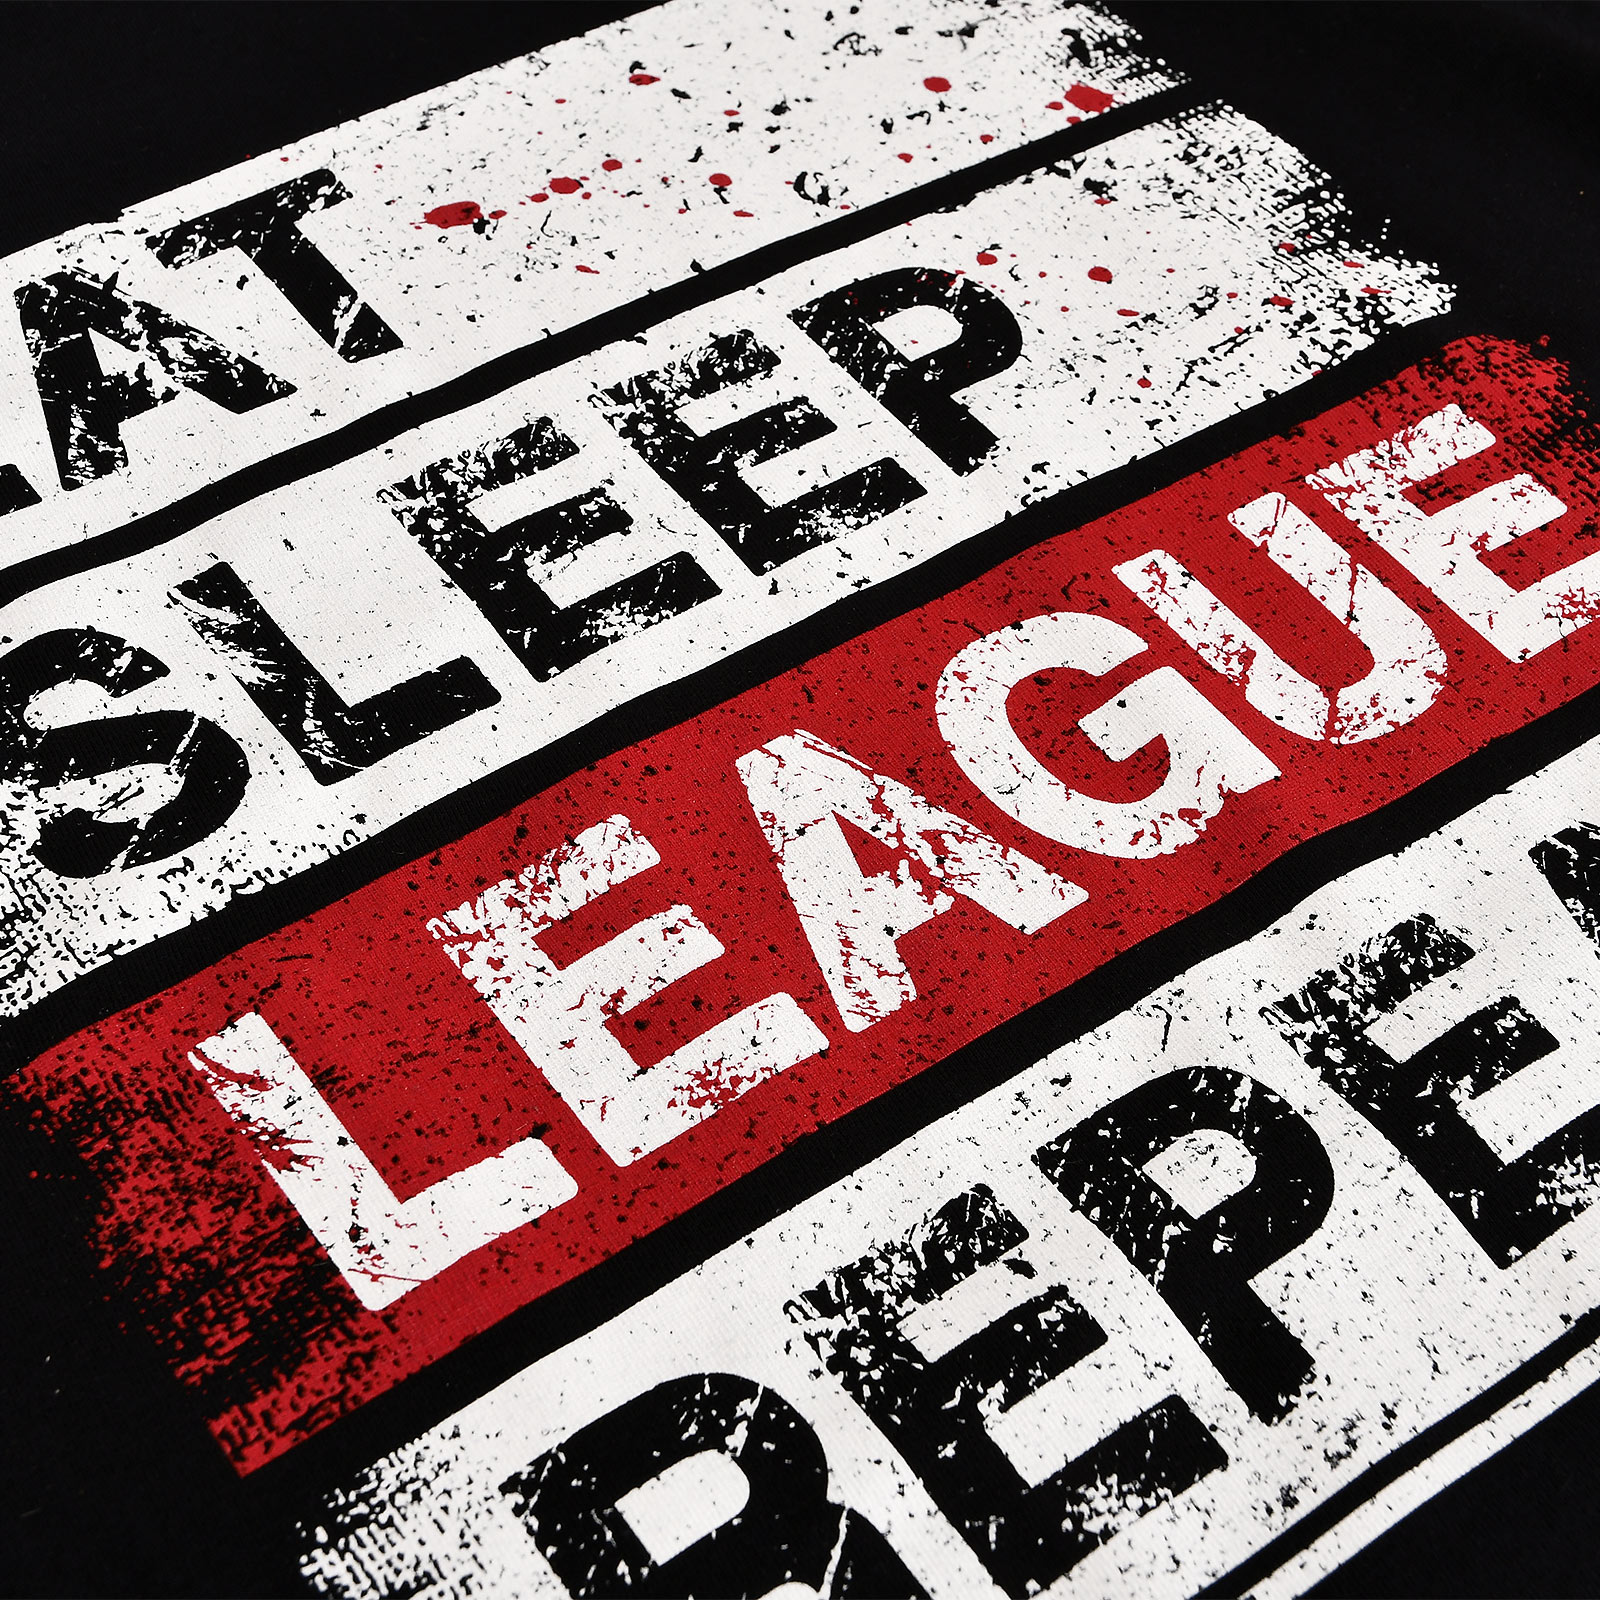 Daily Routine T-Shirt voor League of Legends Fans zwart